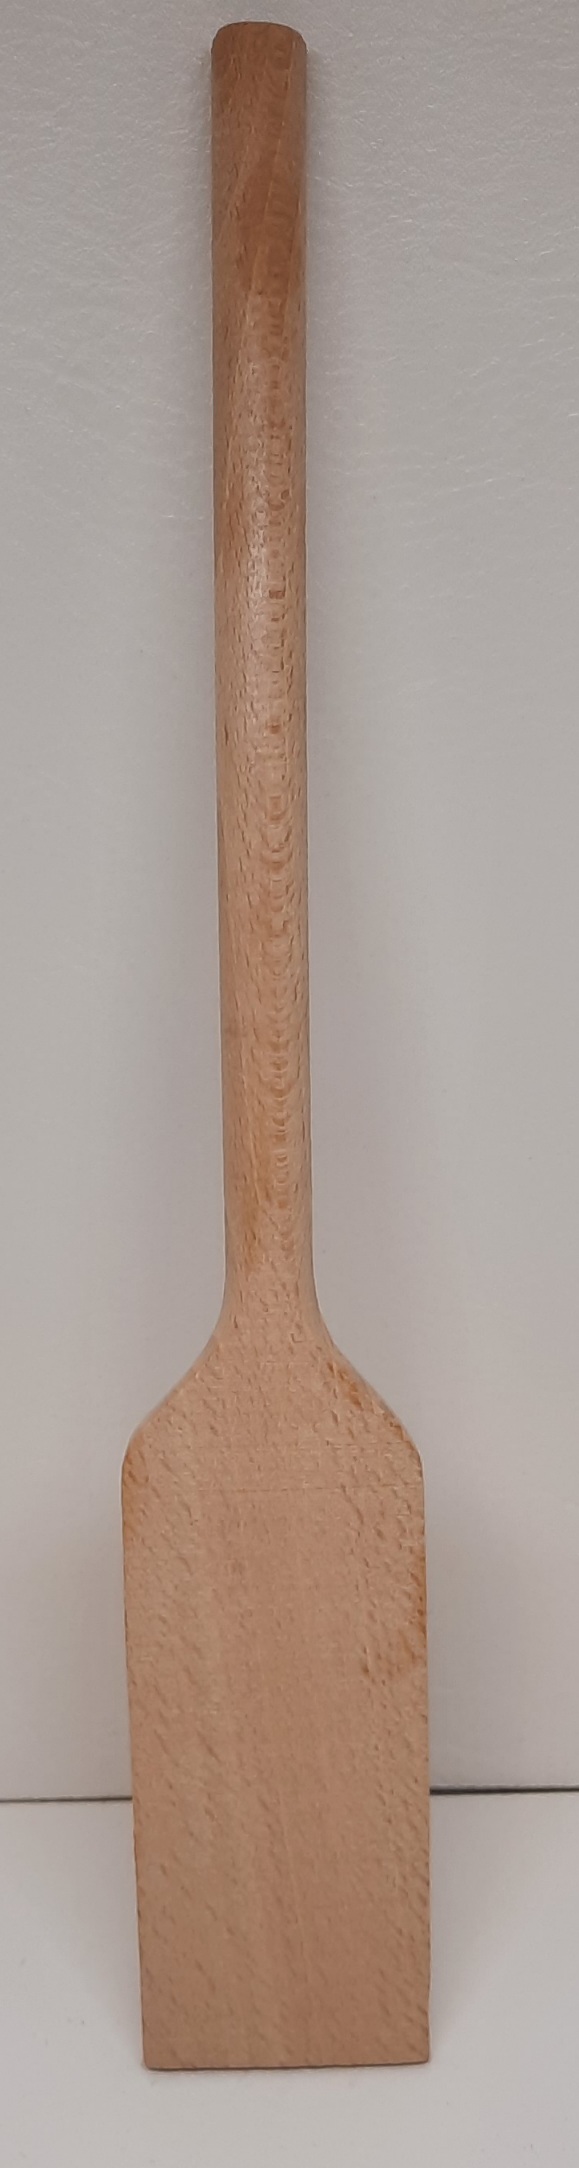 Holz Spachtel 30cm 